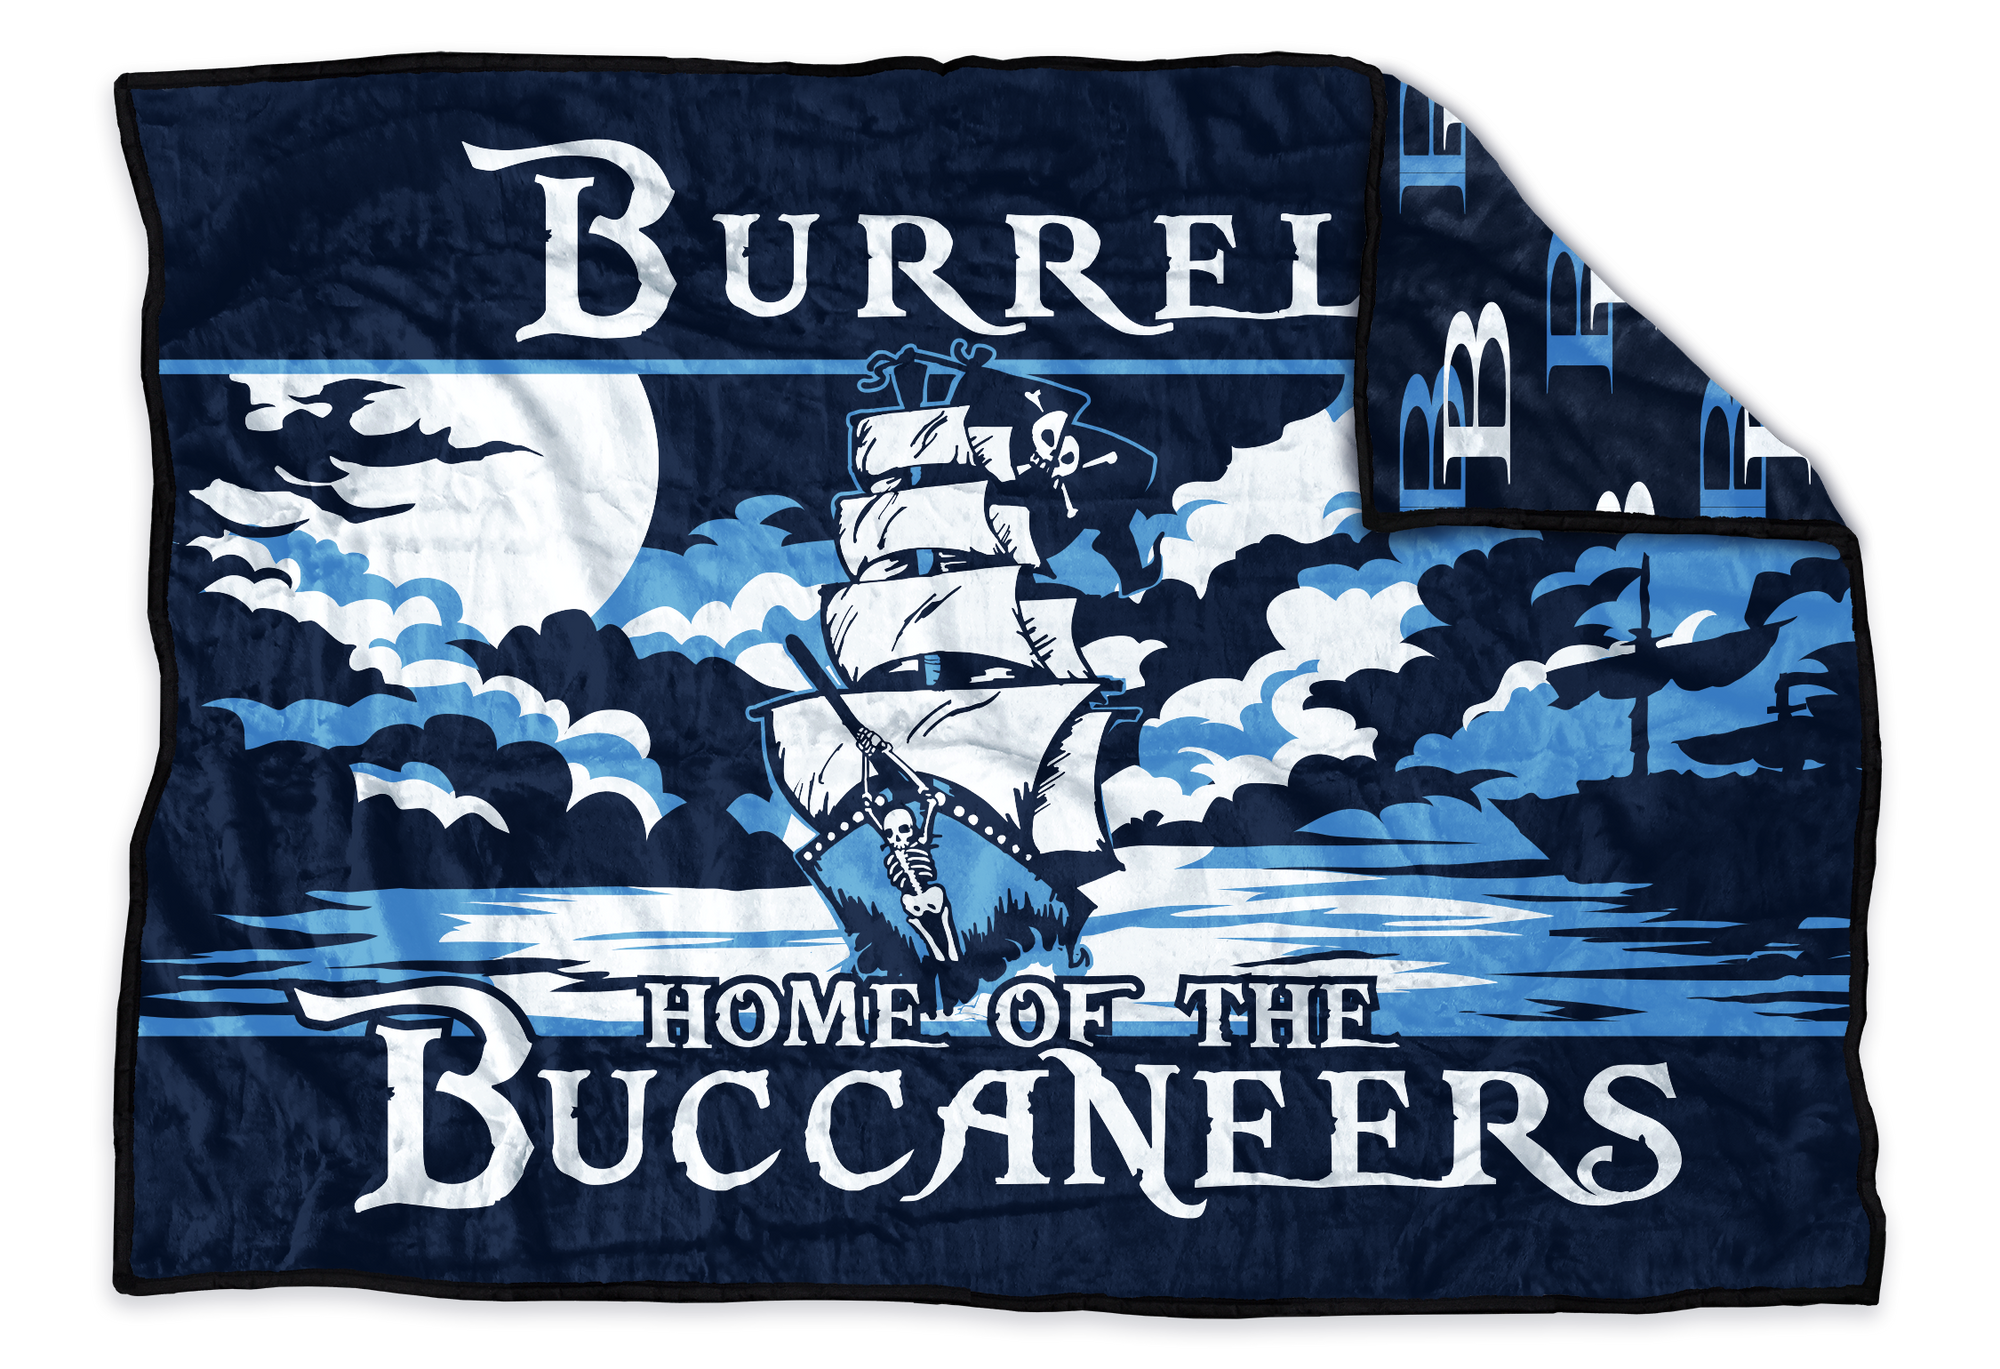 Burrell Buccaneers